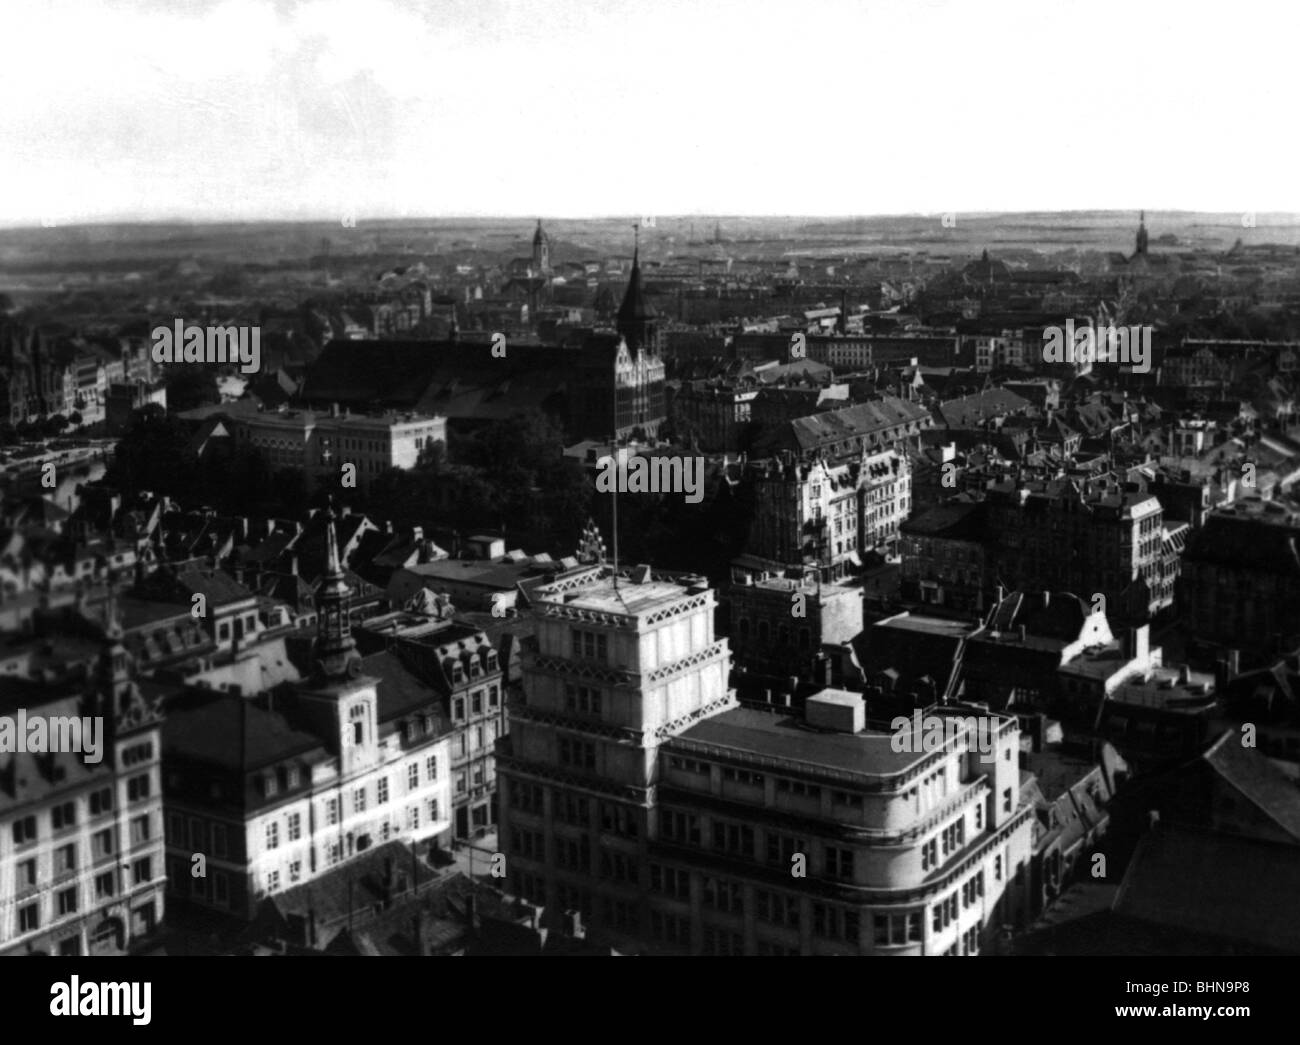 Geografia / viaggio, Russia, Kaliningrad (ex Koenigsberg/Prussia), vista della città dalla torre del castello verso l'isola della cattedrale, cartolina, 1920s, Foto Stock